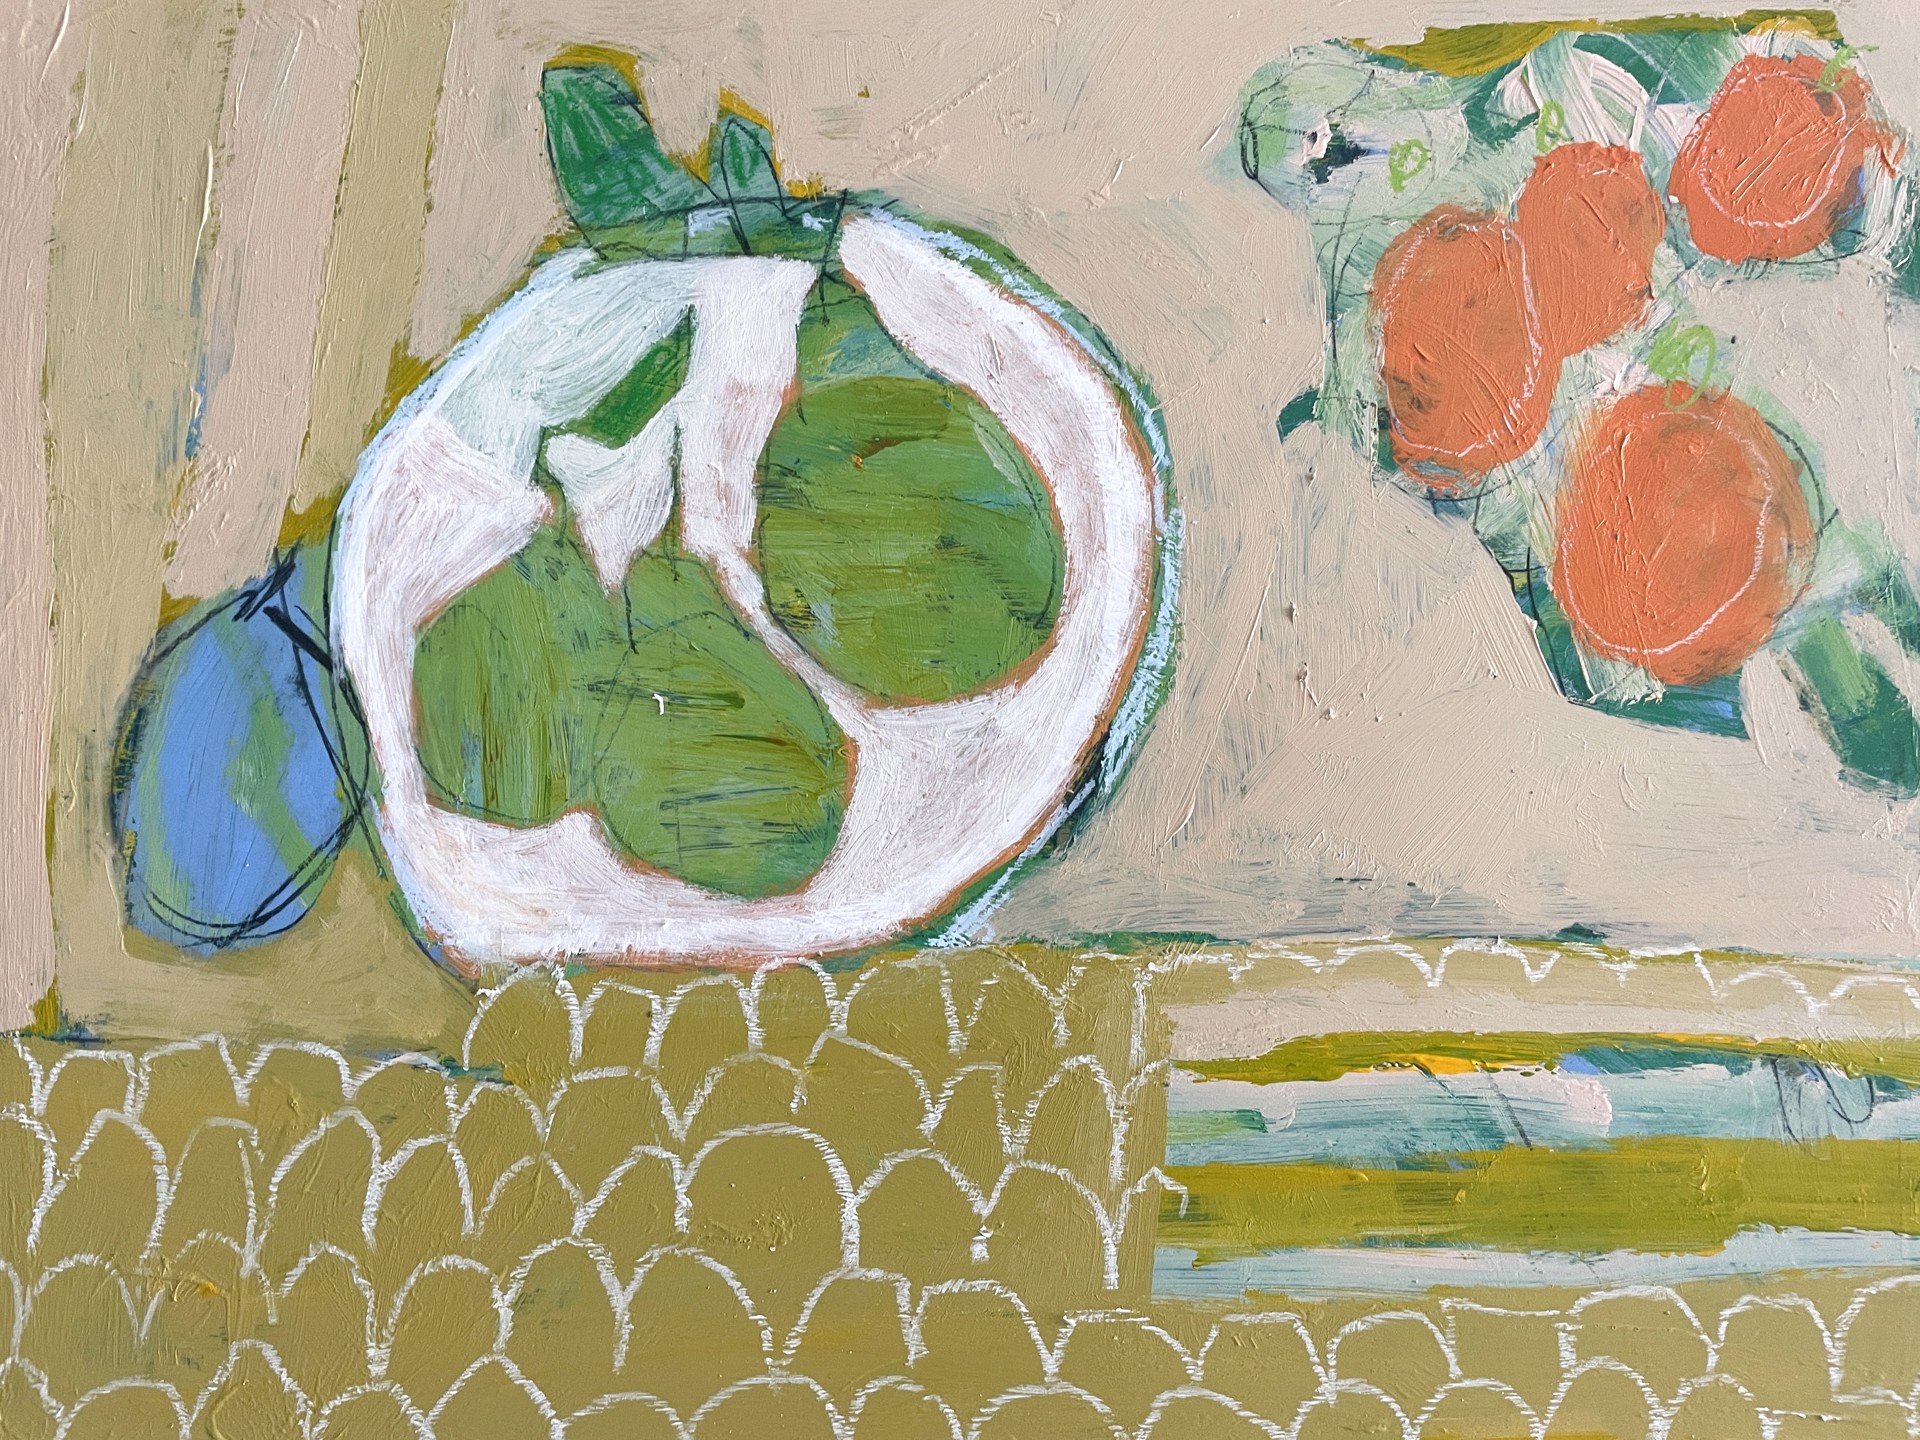 Pears and Oranges on Table by Rachael Van Dyke